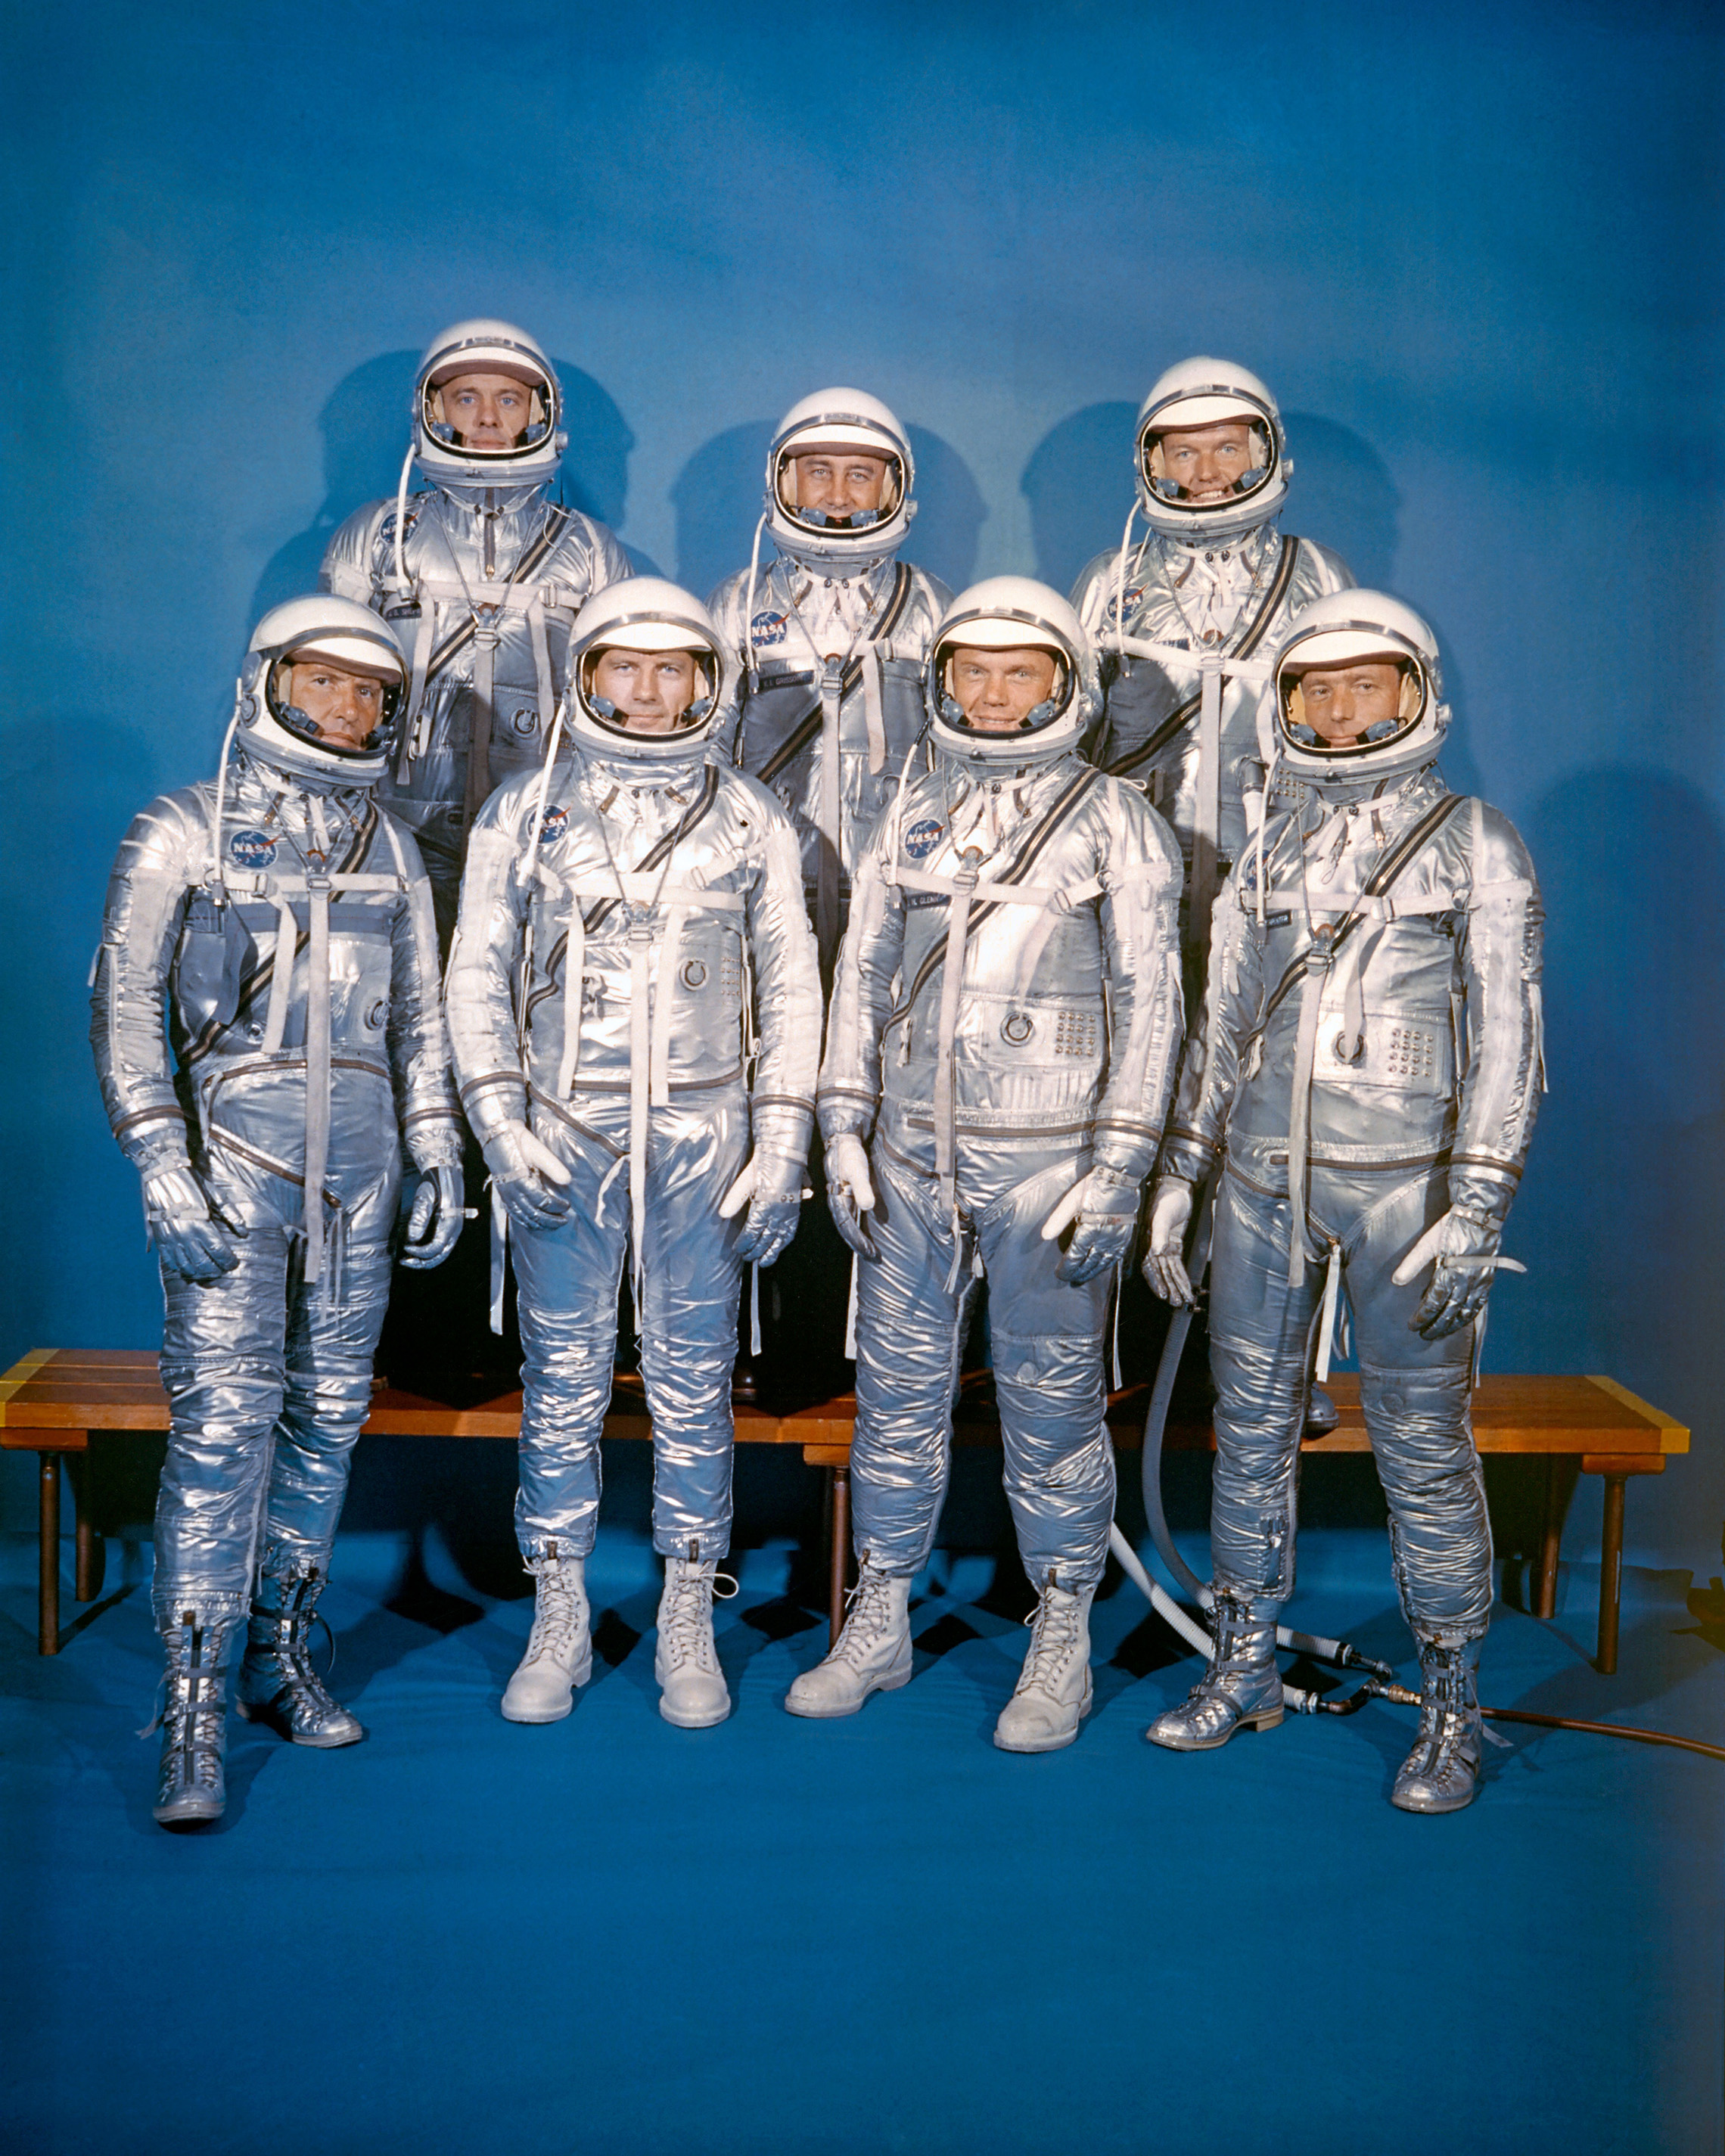 Le 9 avril 1959, la NASA a présenté sa première classe d